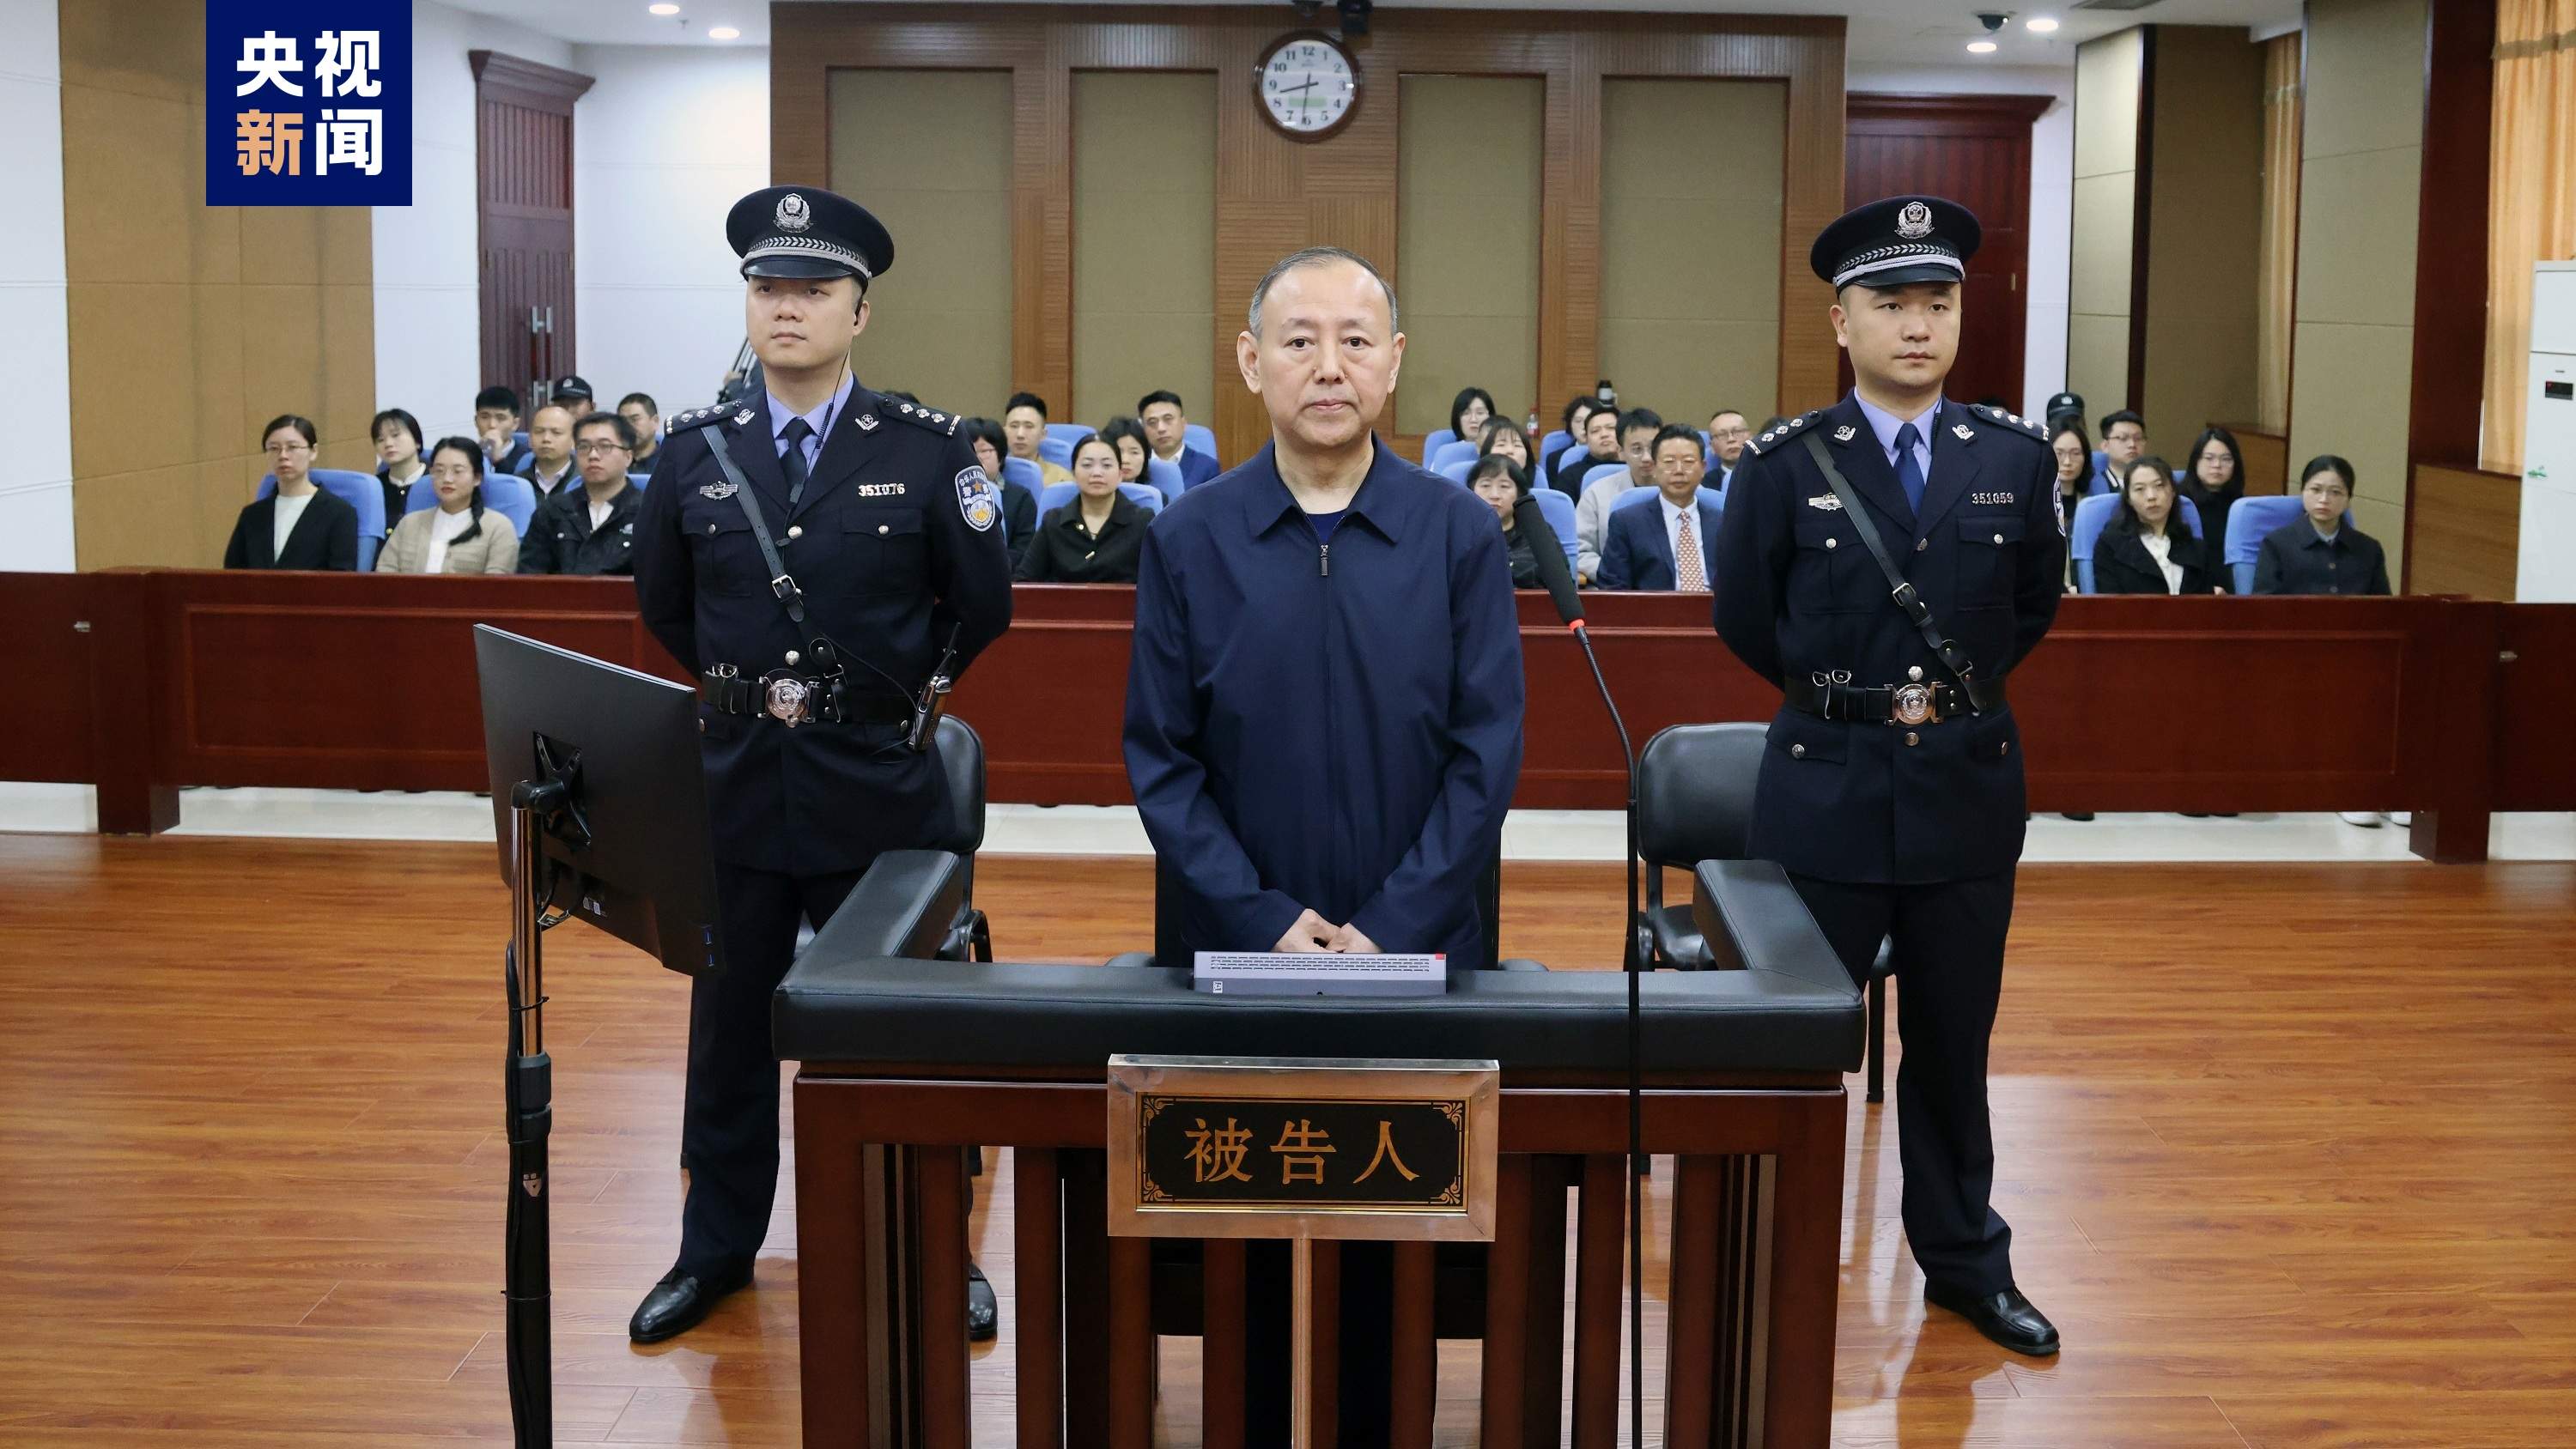 原应急处置部消防声援局副局长张福生受贿案一审开庭